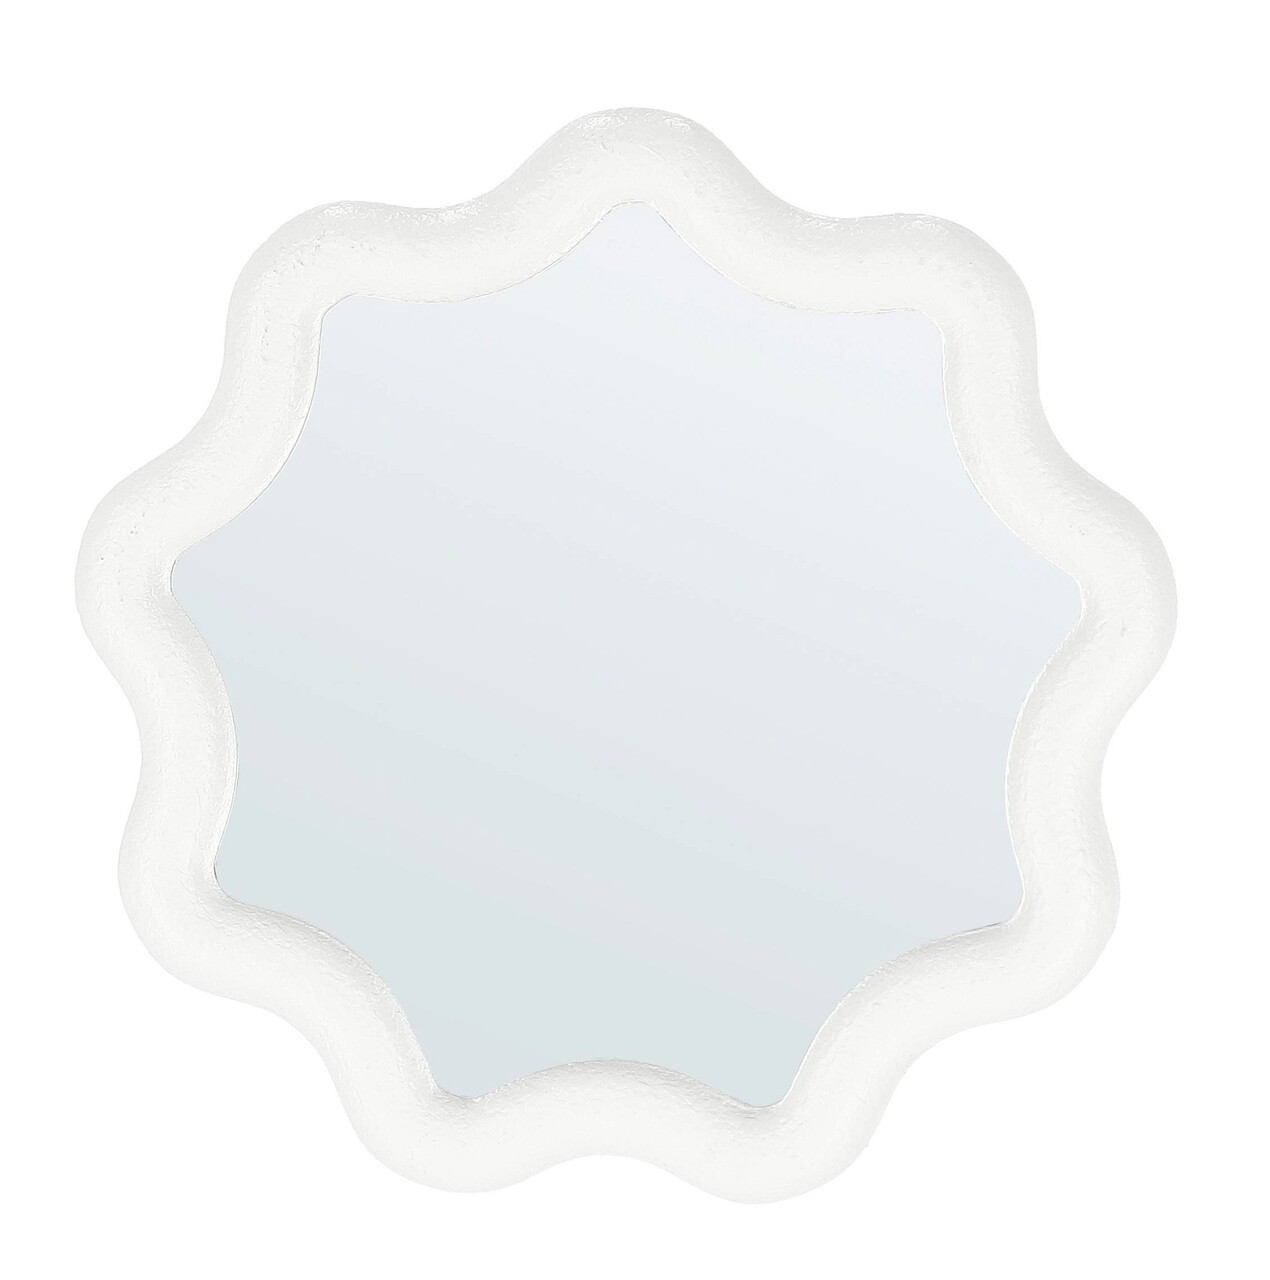 Oglinda decorativa Creamy, Bizzotto, 36x2x36 cm, MDF/sticla, crem